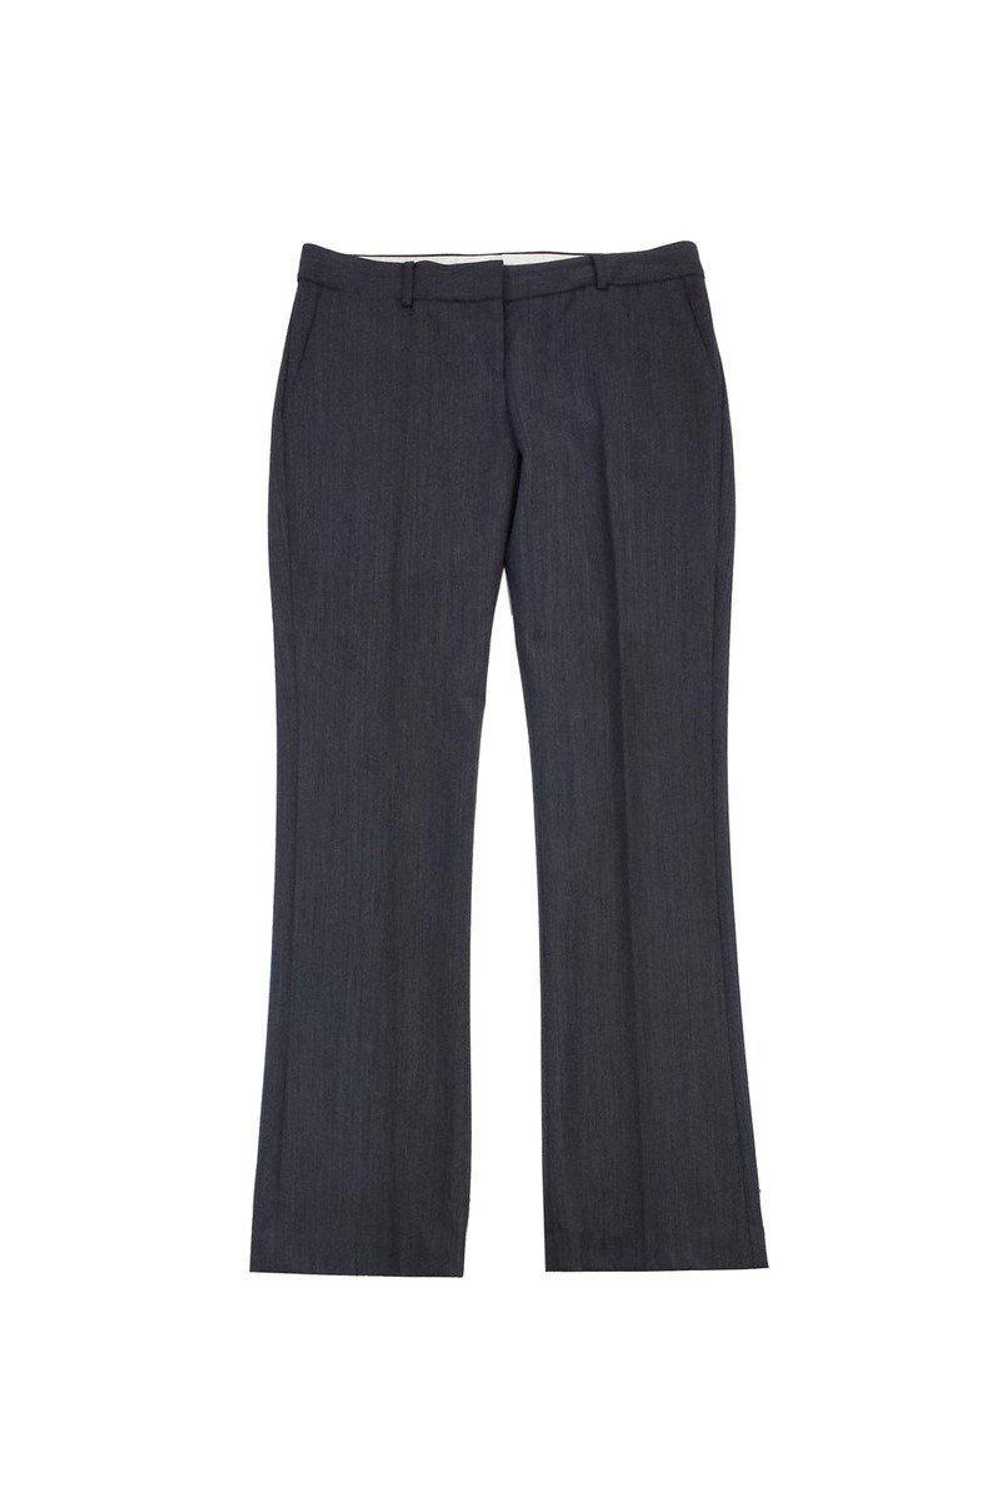 Theory - Grey Wool Herringbone Suit Pants Sz 10 - image 1